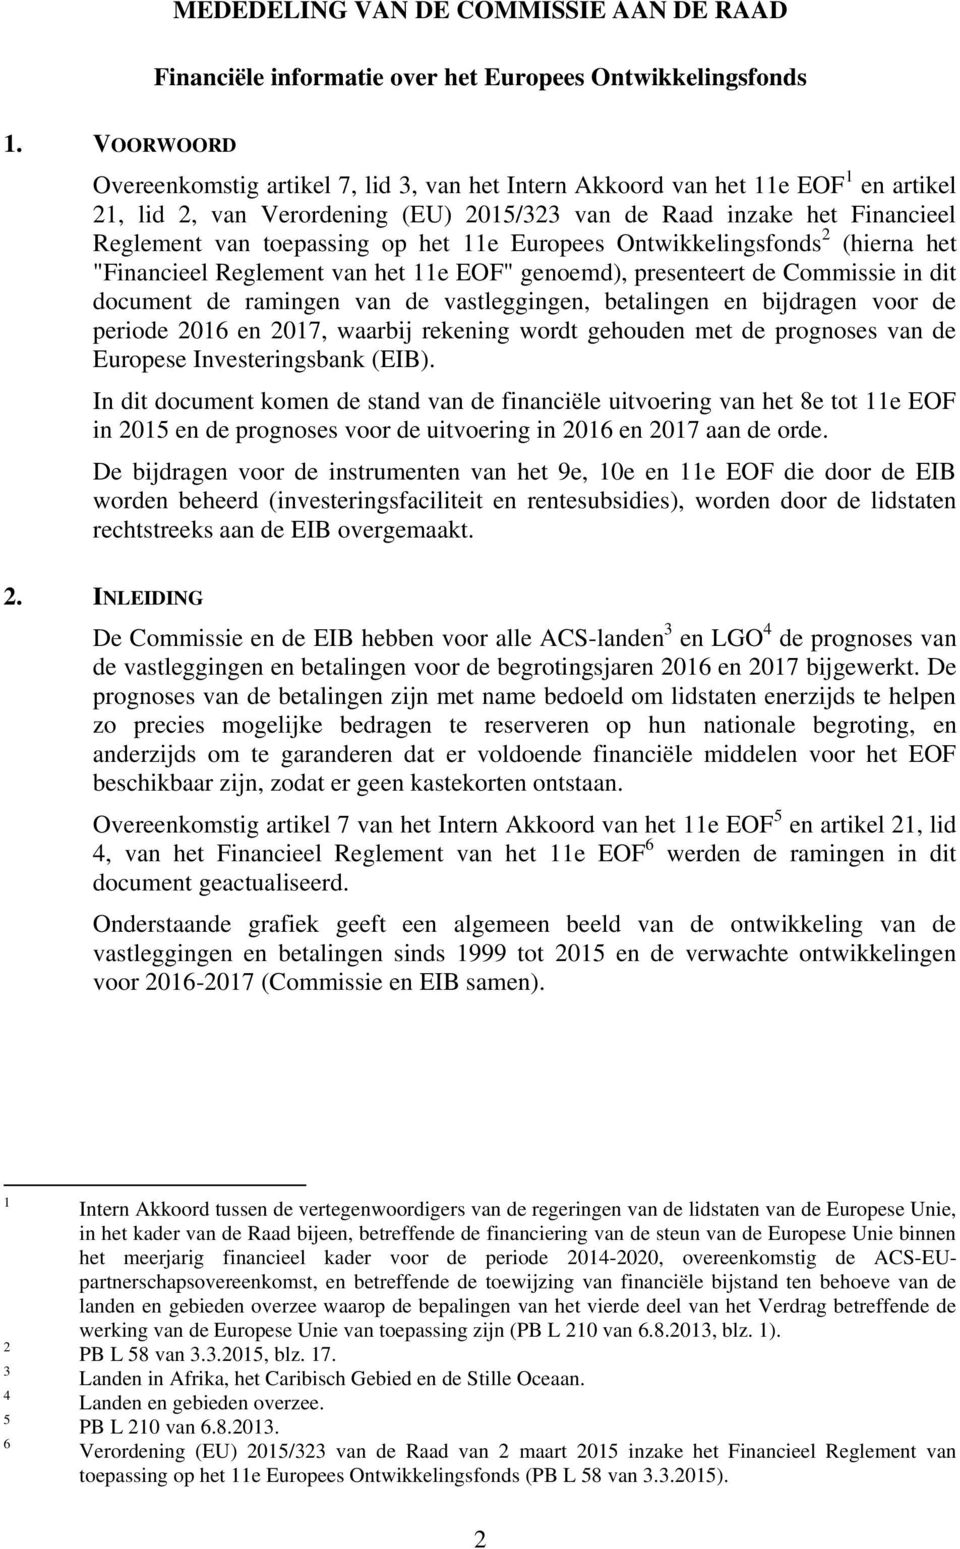 het 11e Europees Ontwikkelingsfonds 2 (hierna het "Financieel Reglement van het 11e EOF" genoemd), presenteert de Commissie in dit document de ramingen van de vastleggingen, betalingen en bijdragen